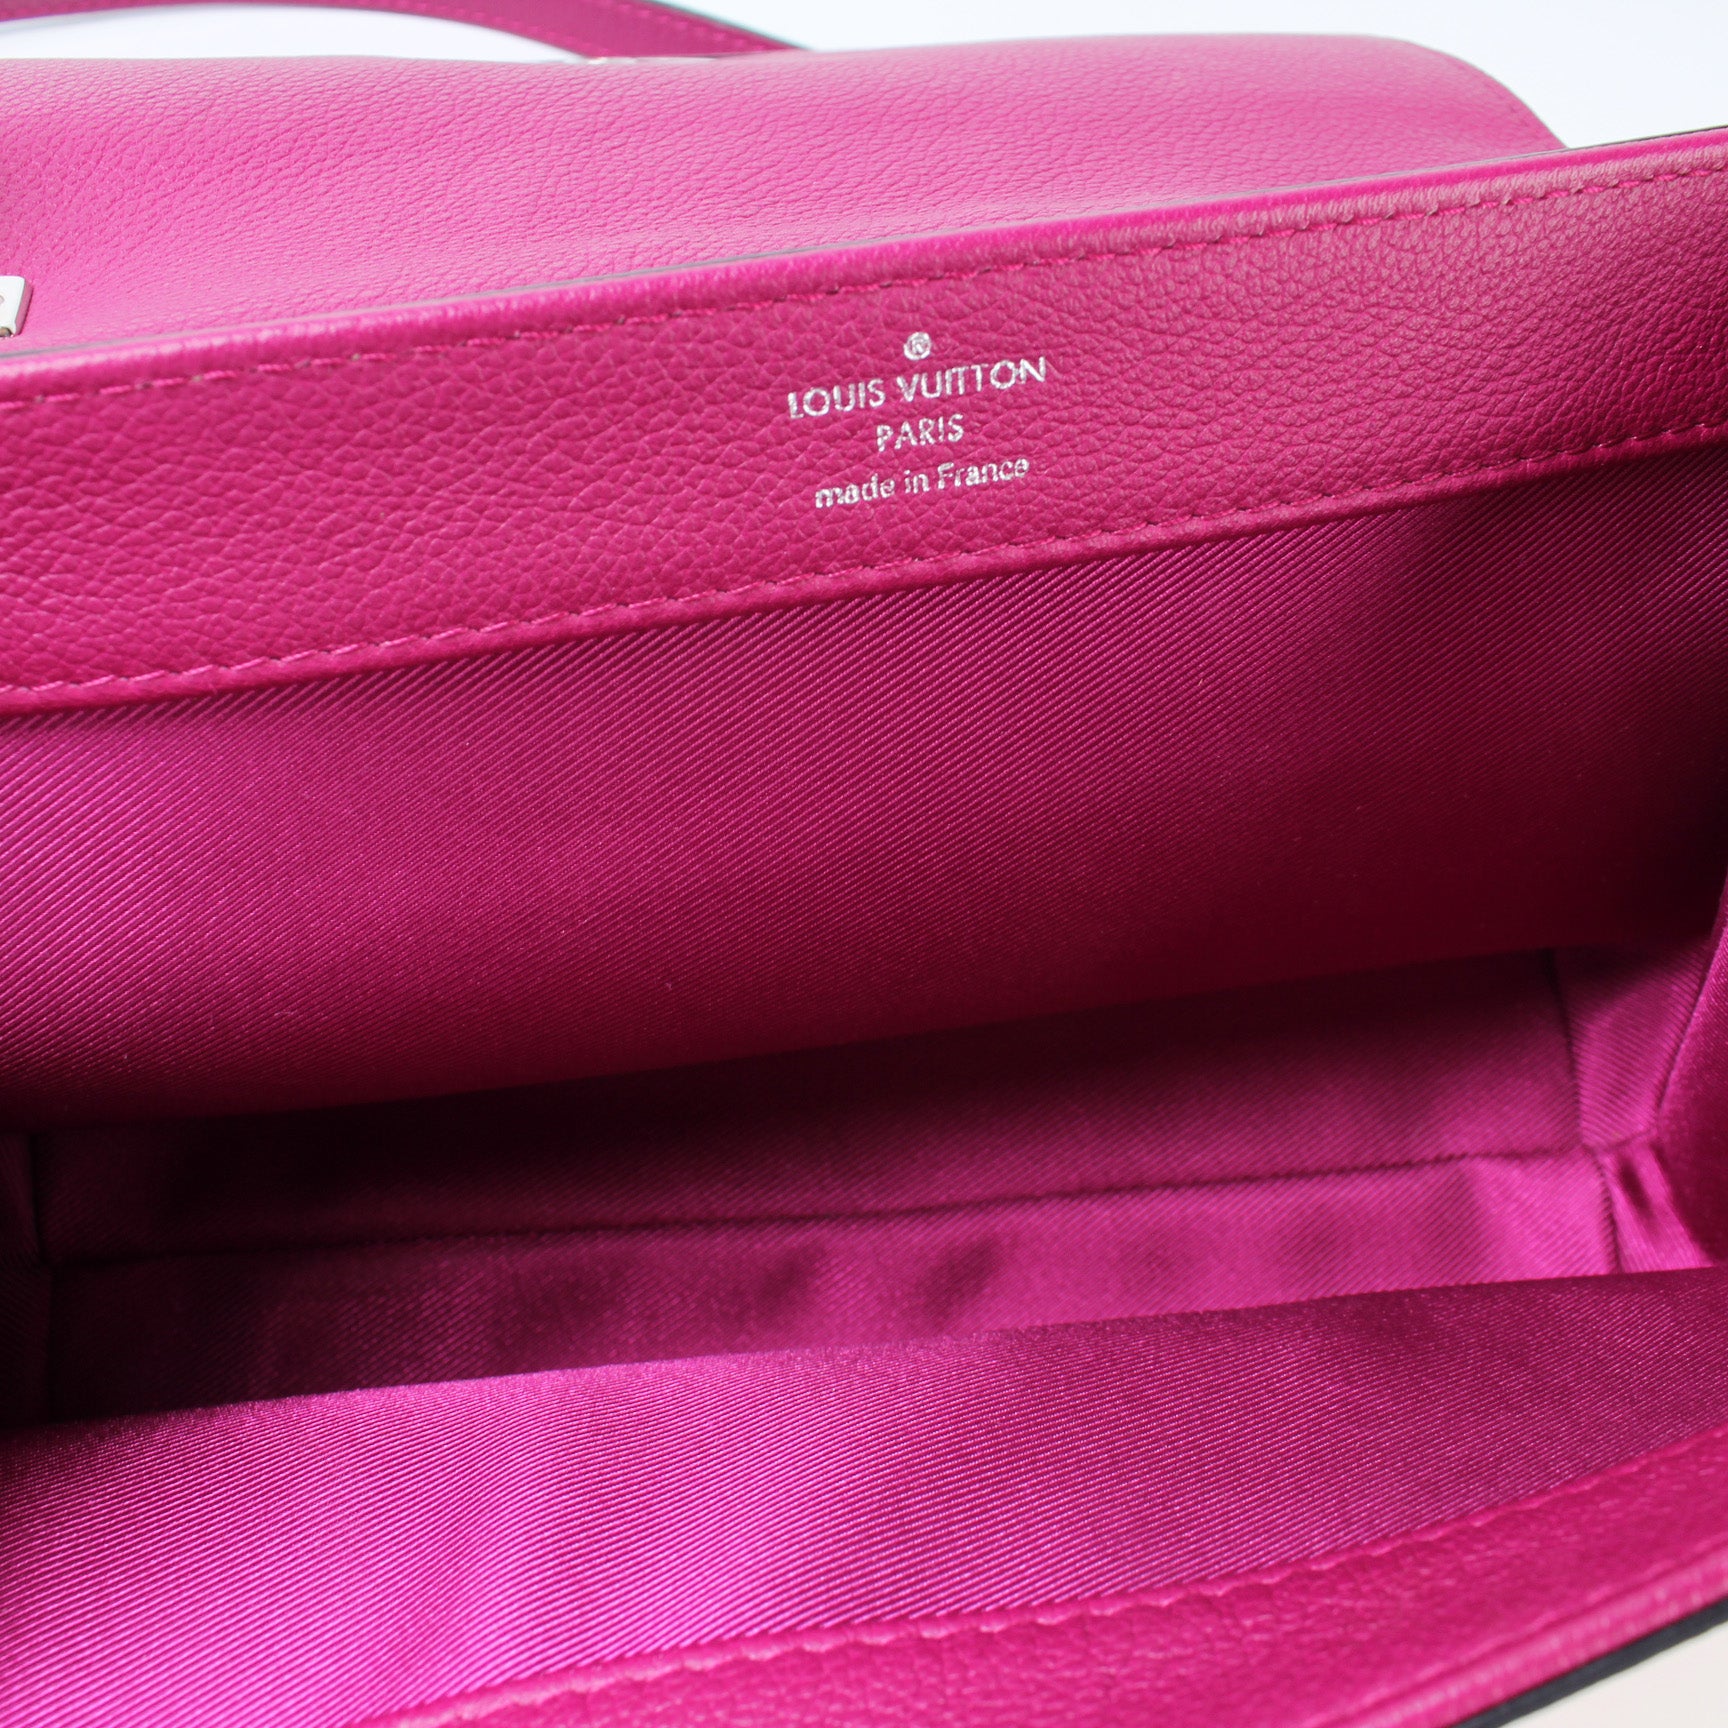 Lockme II BB – Keeks Designer Handbags